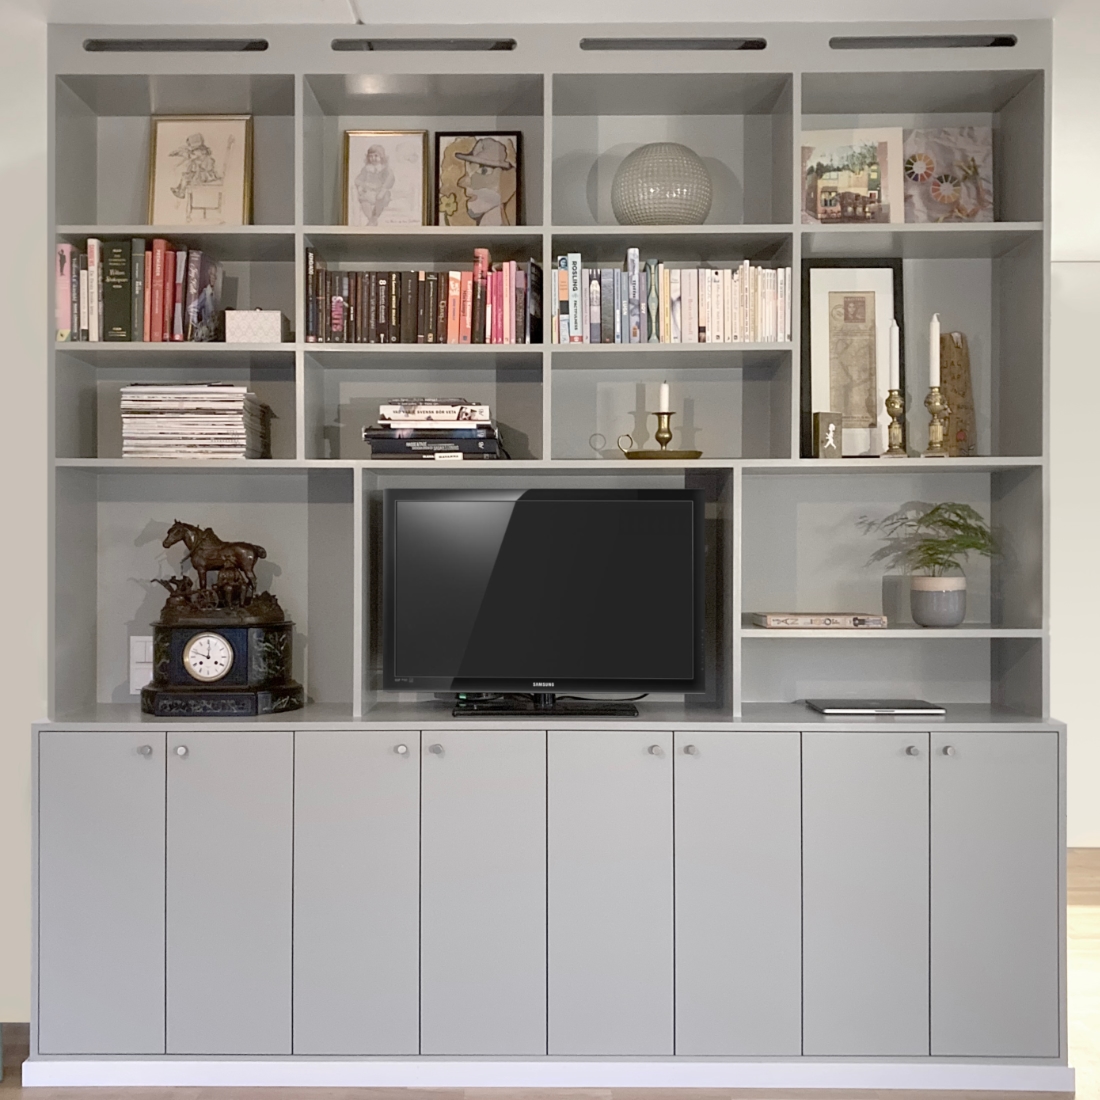 Platsbyggd möbel i lägenhet i grå färg